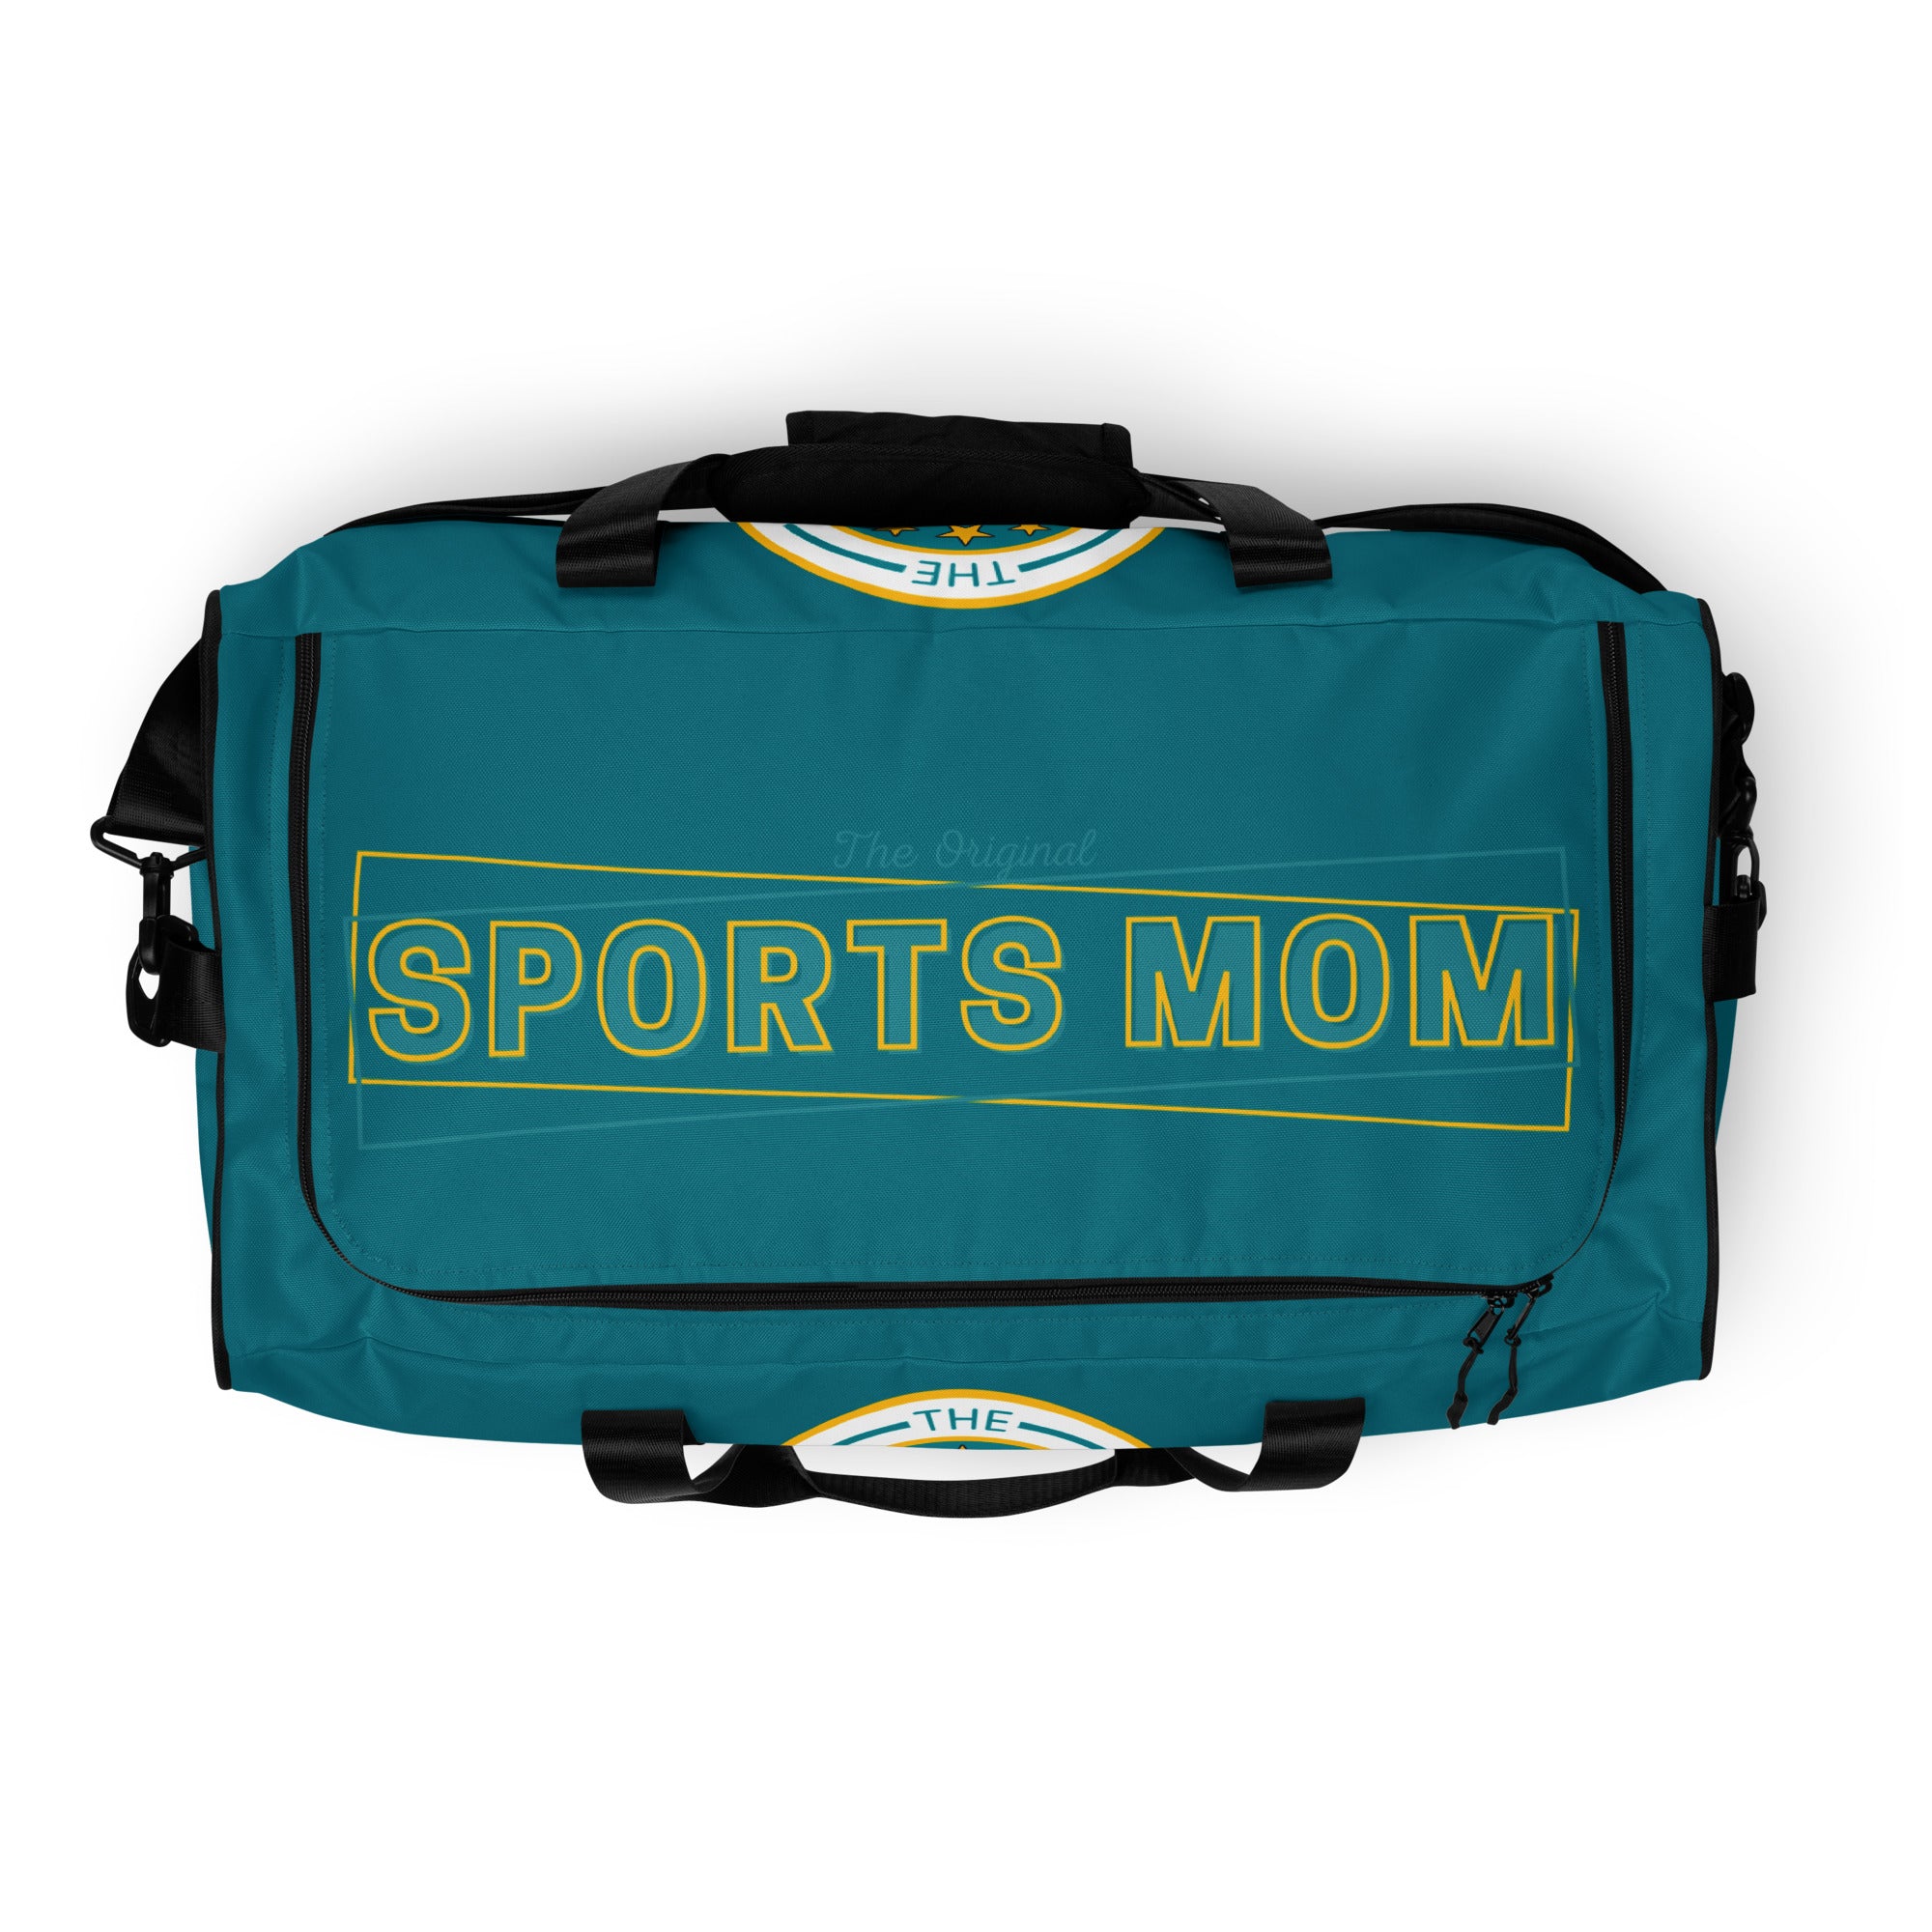 Sports Mom Ultimate Duffle Bag - Eastern Blue